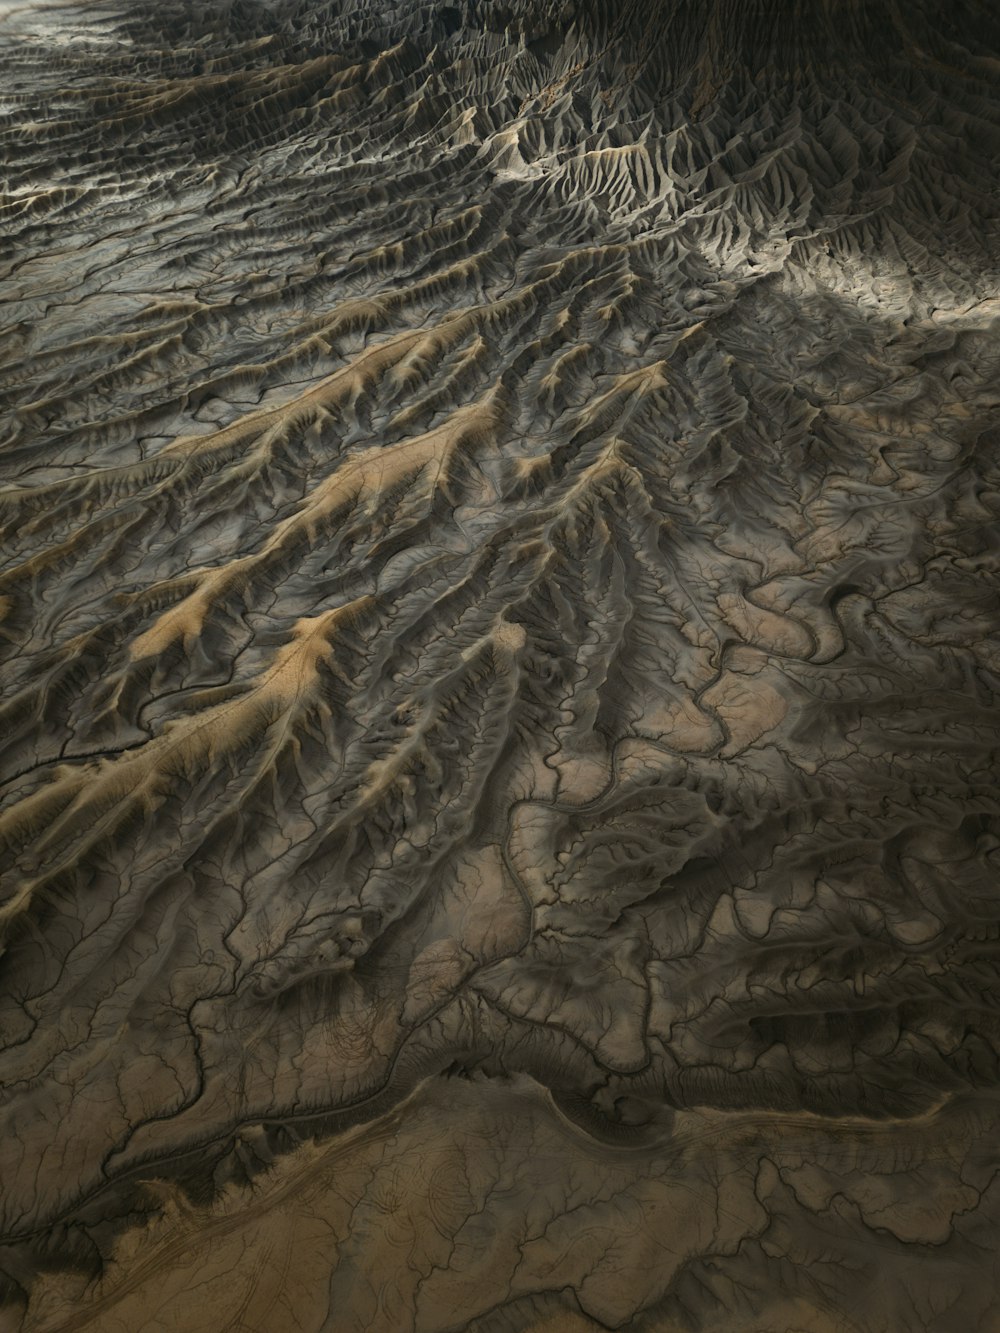 Una veduta aerea di un paesaggio desertico con una montagna sullo sfondo